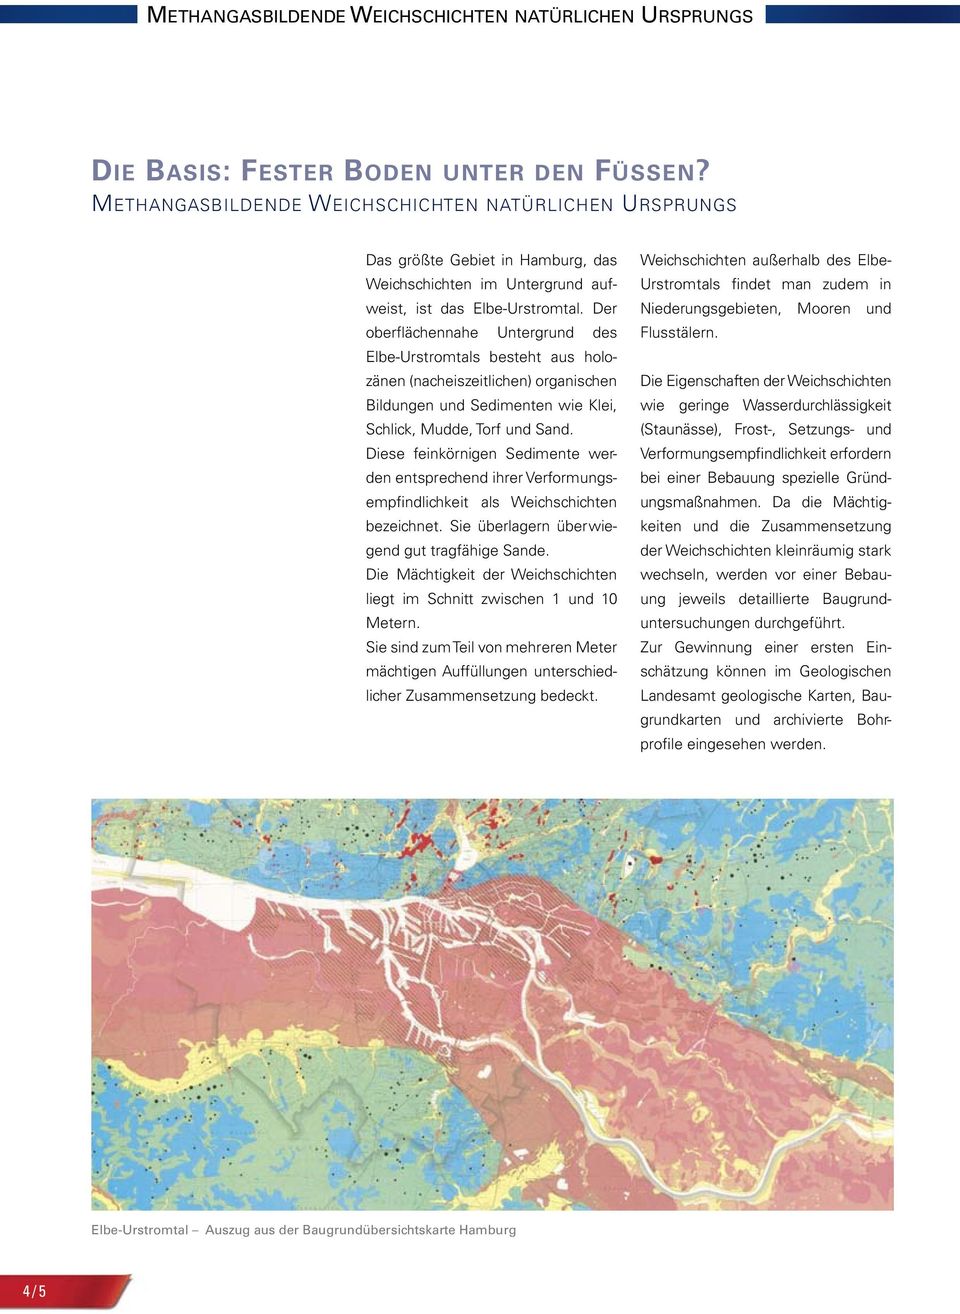 Der oberflächennahe Untergrund des Elbe-Urstromtals besteht aus holozänen(nacheiszeitlichen)organischen BildungenundSedimentenwieKlei, Schlick,Mudde,TorfundSand.